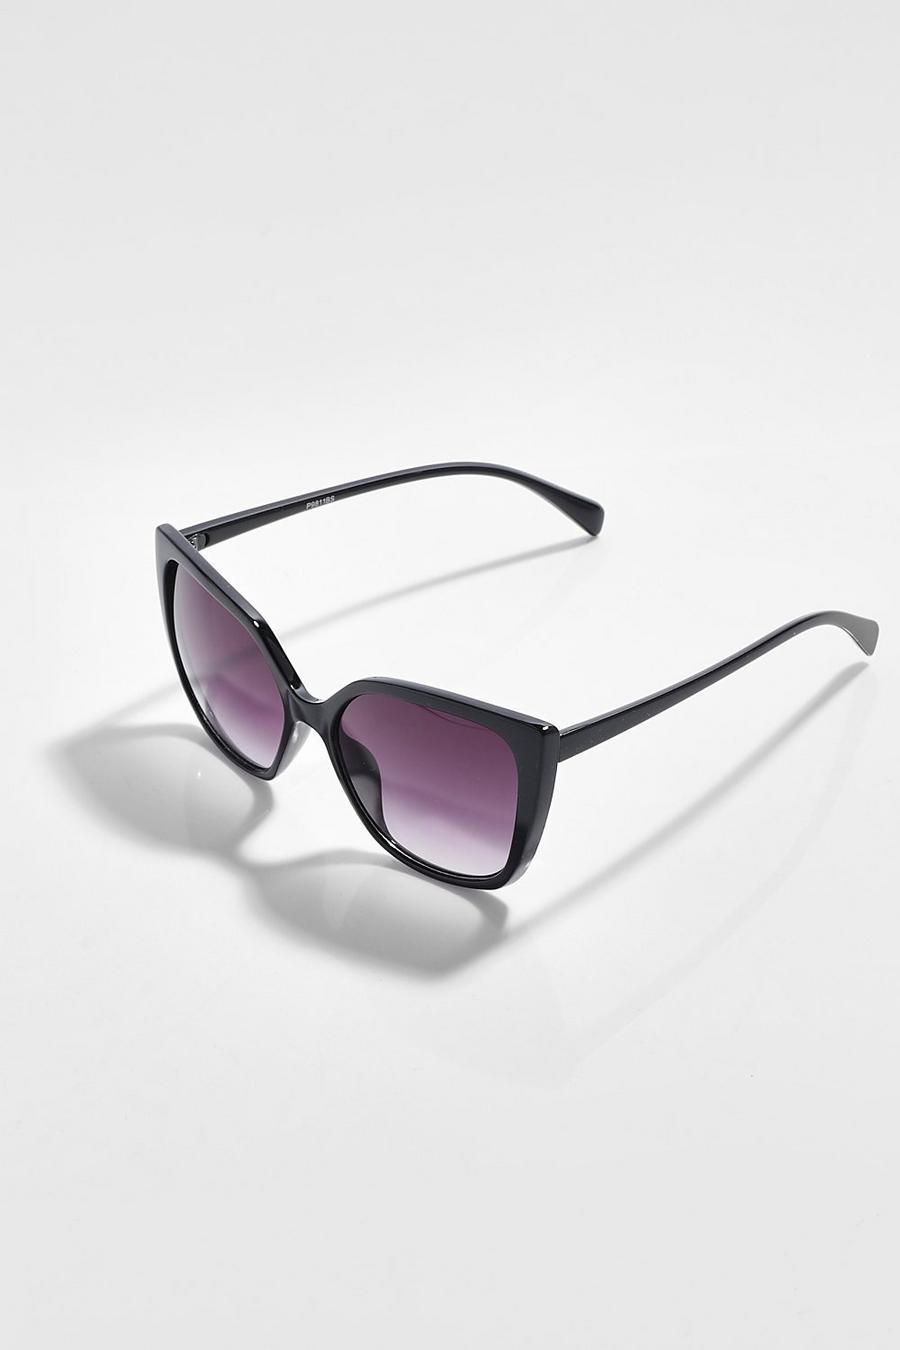 Black Oversized Cat Eye Sunglasses Gradient Lens